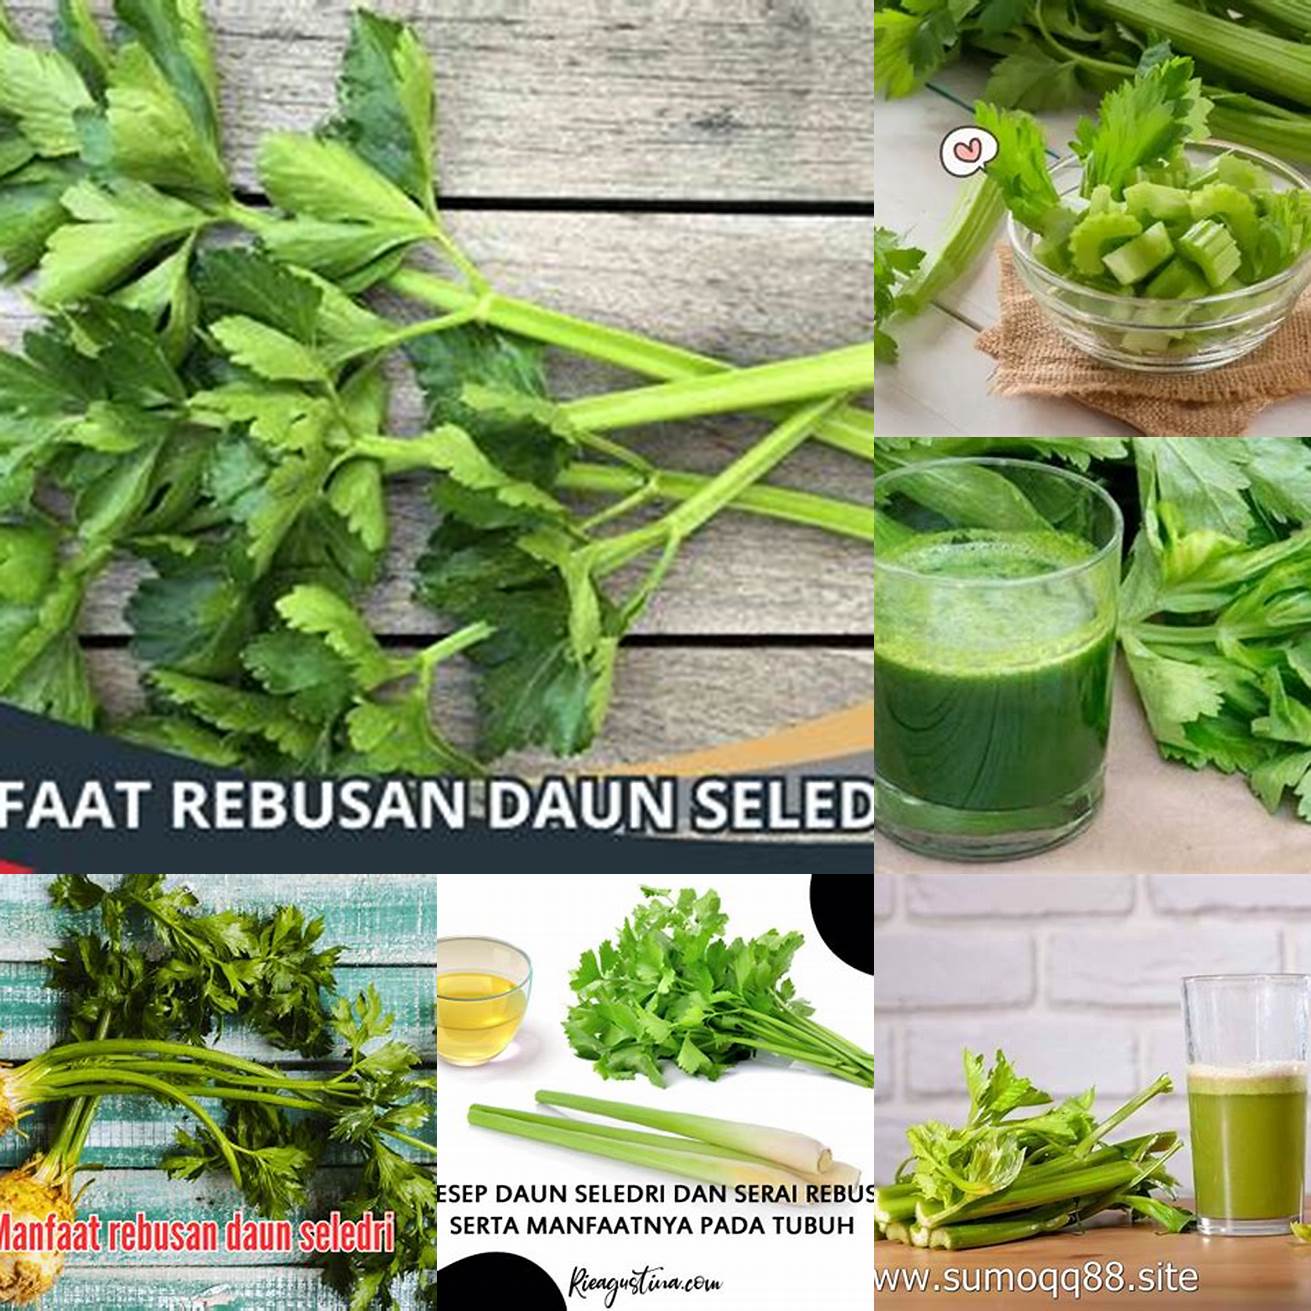 Berapa kali sebaiknya mengonsumsi rebusan daun seledri dalam seminggu